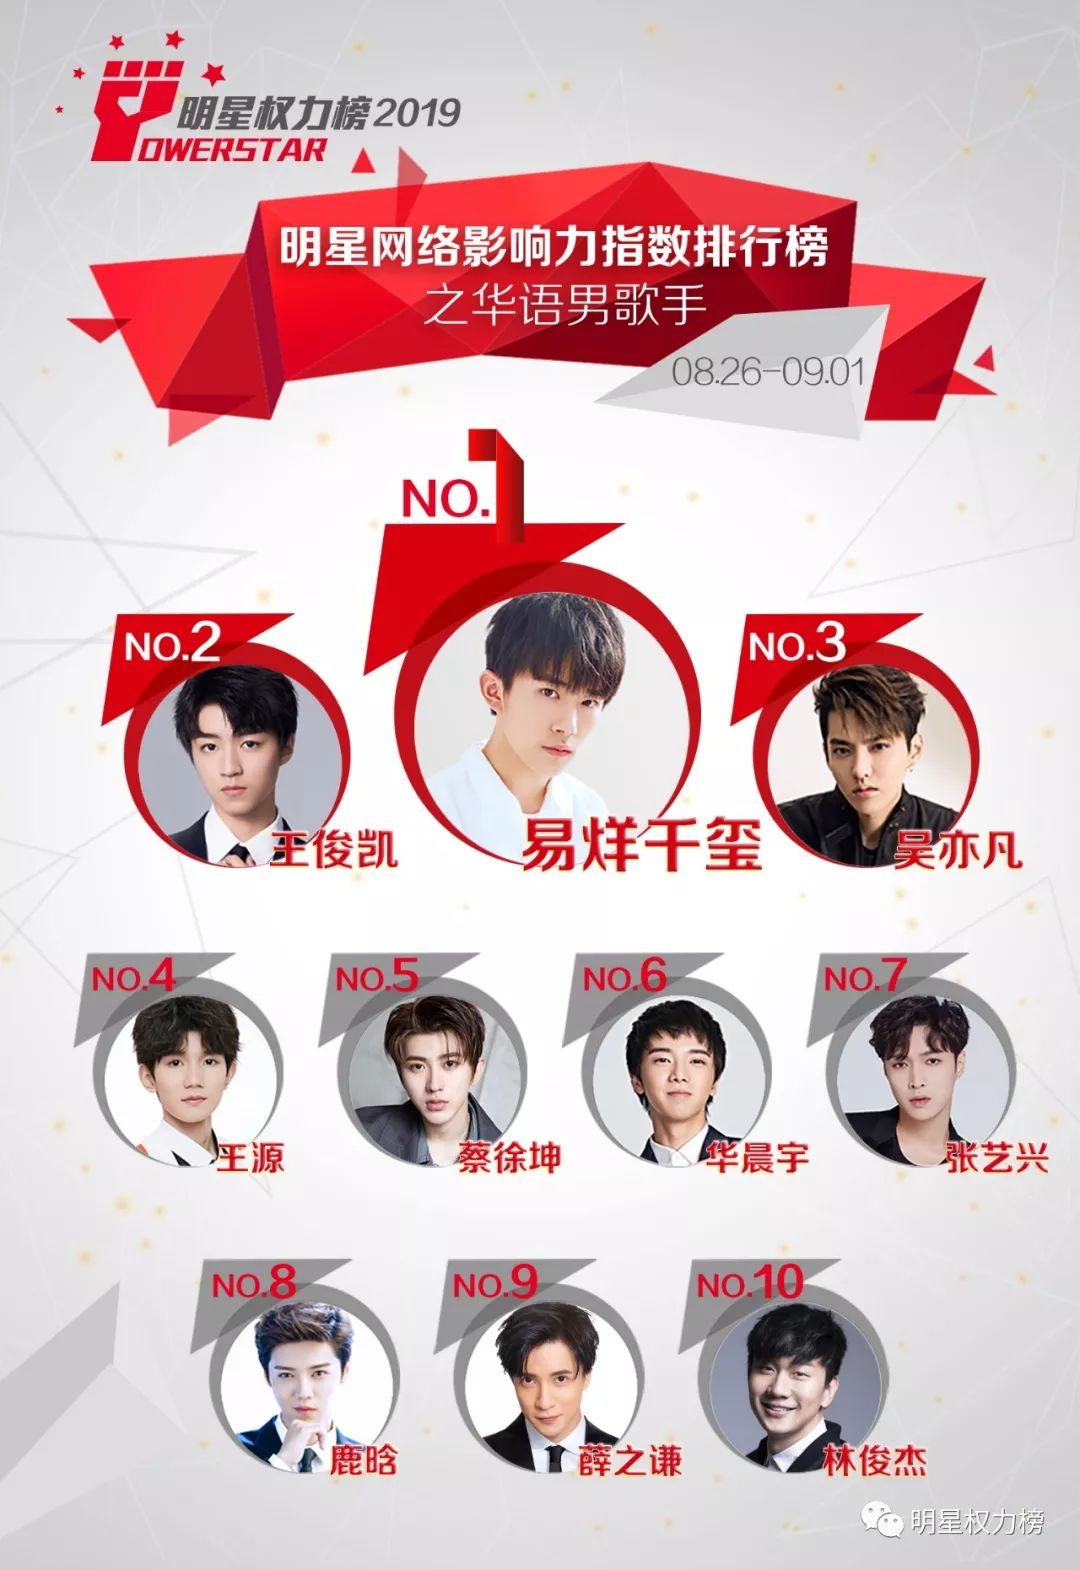 明星网络影响力指数排行榜第215期榜单之华语男歌手Top10